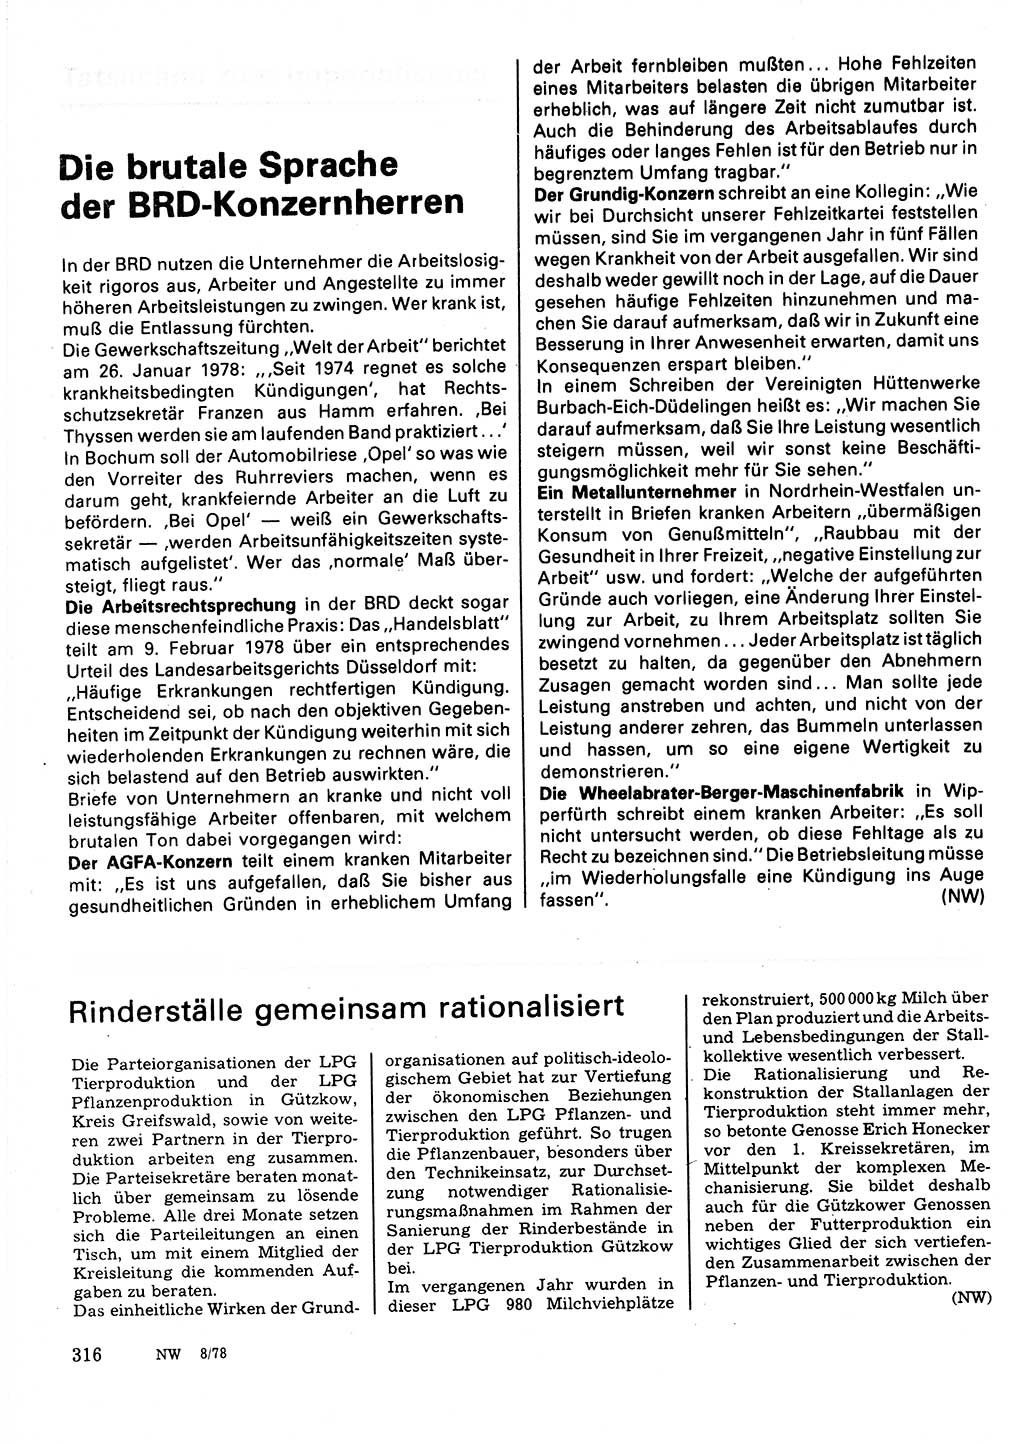 Neuer Weg (NW), Organ des Zentralkomitees (ZK) der SED (Sozialistische Einheitspartei Deutschlands) für Fragen des Parteilebens, 33. Jahrgang [Deutsche Demokratische Republik (DDR)] 1978, Seite 316 (NW ZK SED DDR 1978, S. 316)